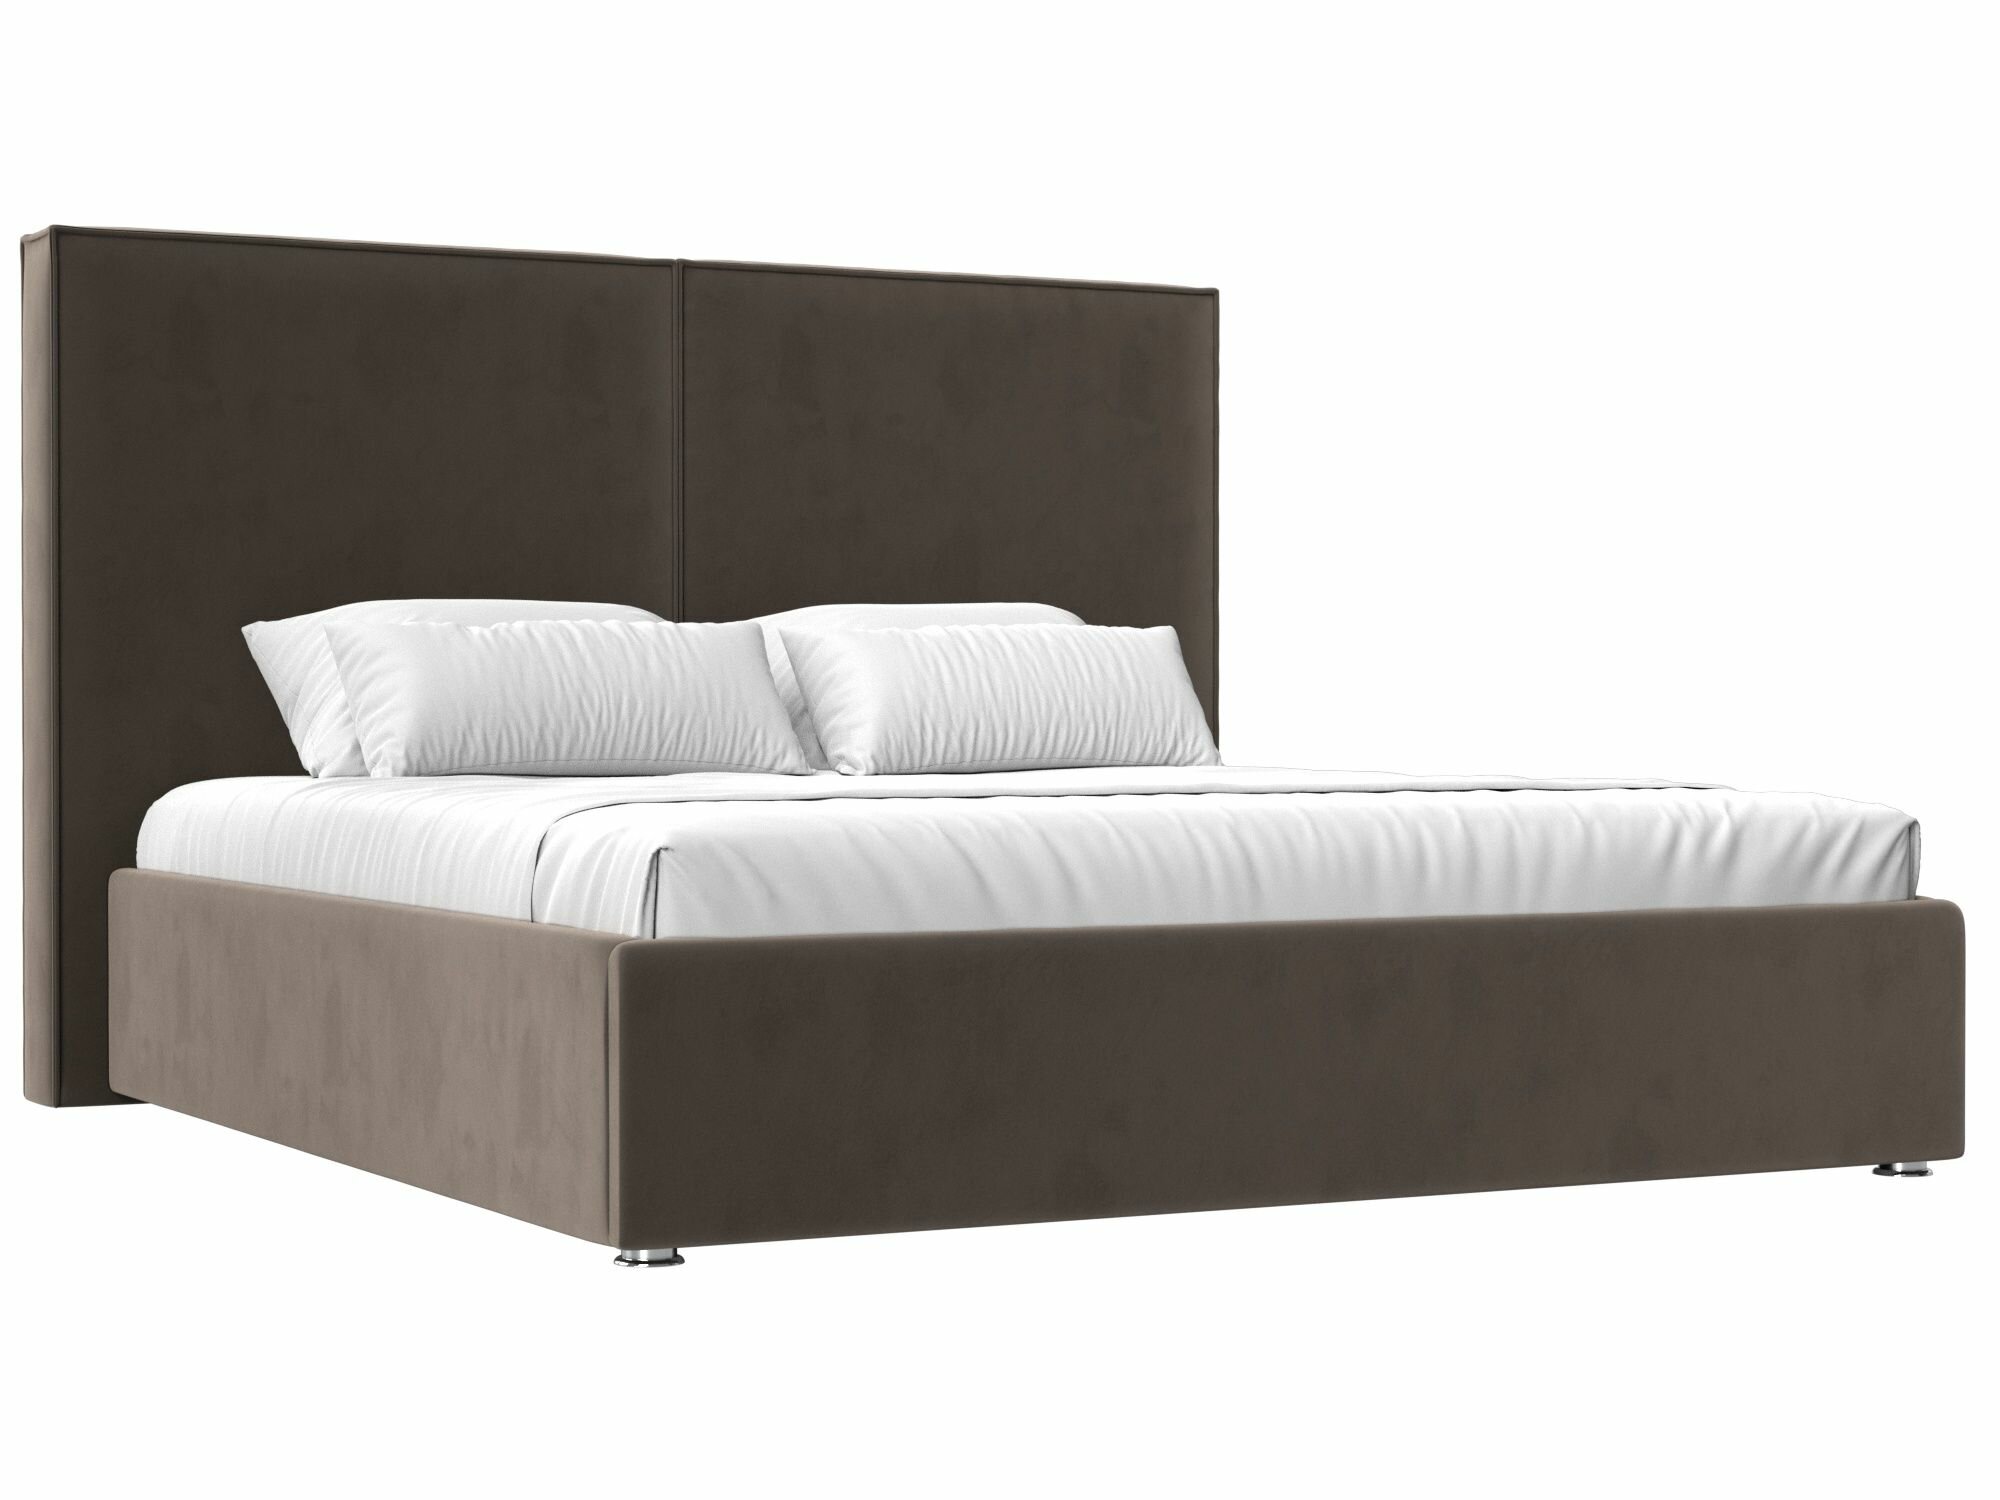 Интерьерная кровать Аура 200, Велюр, Модель 120554